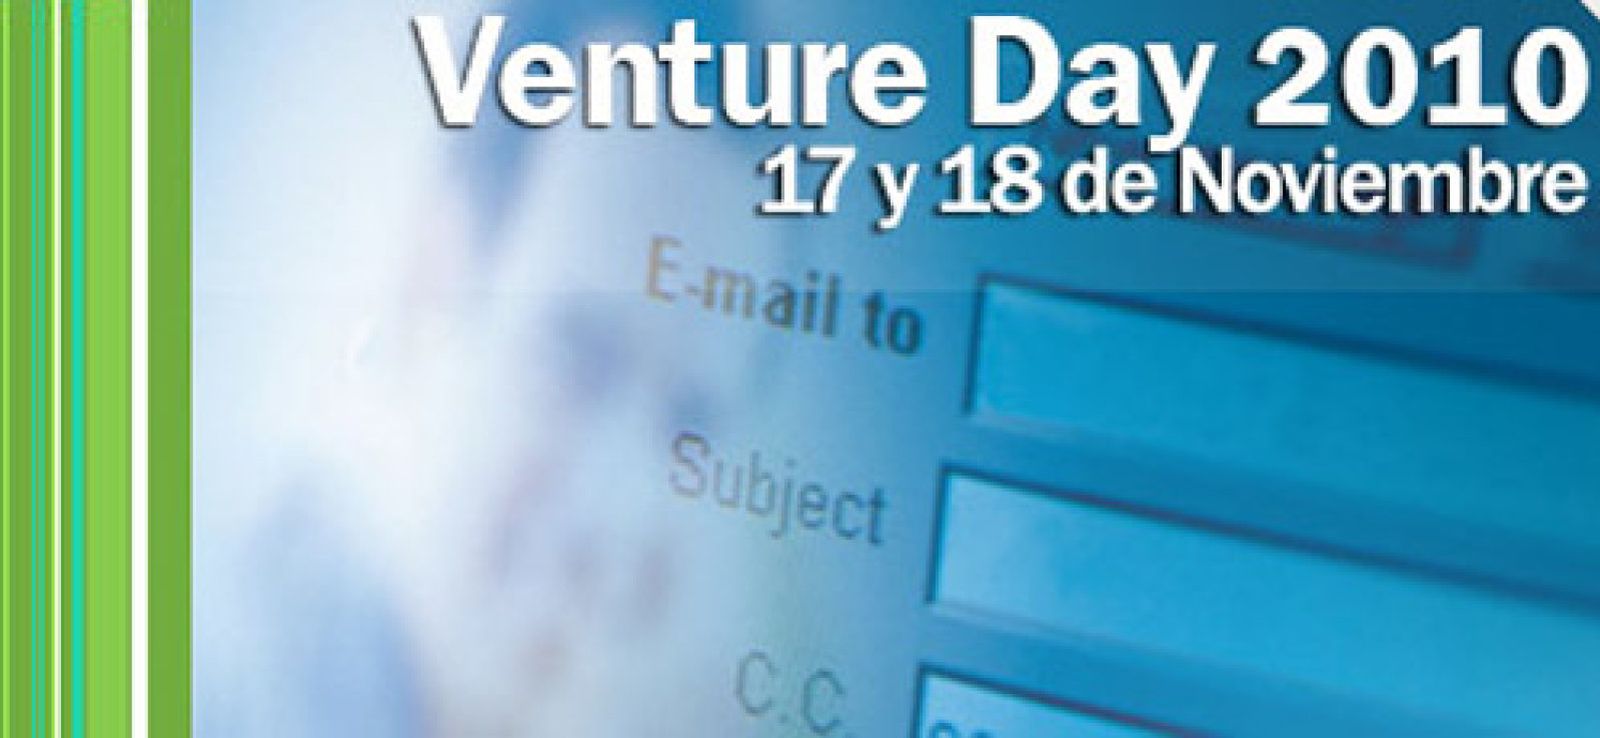 Foto: Invirtiendo en emprendedores: llega el IE Venture Days 2010